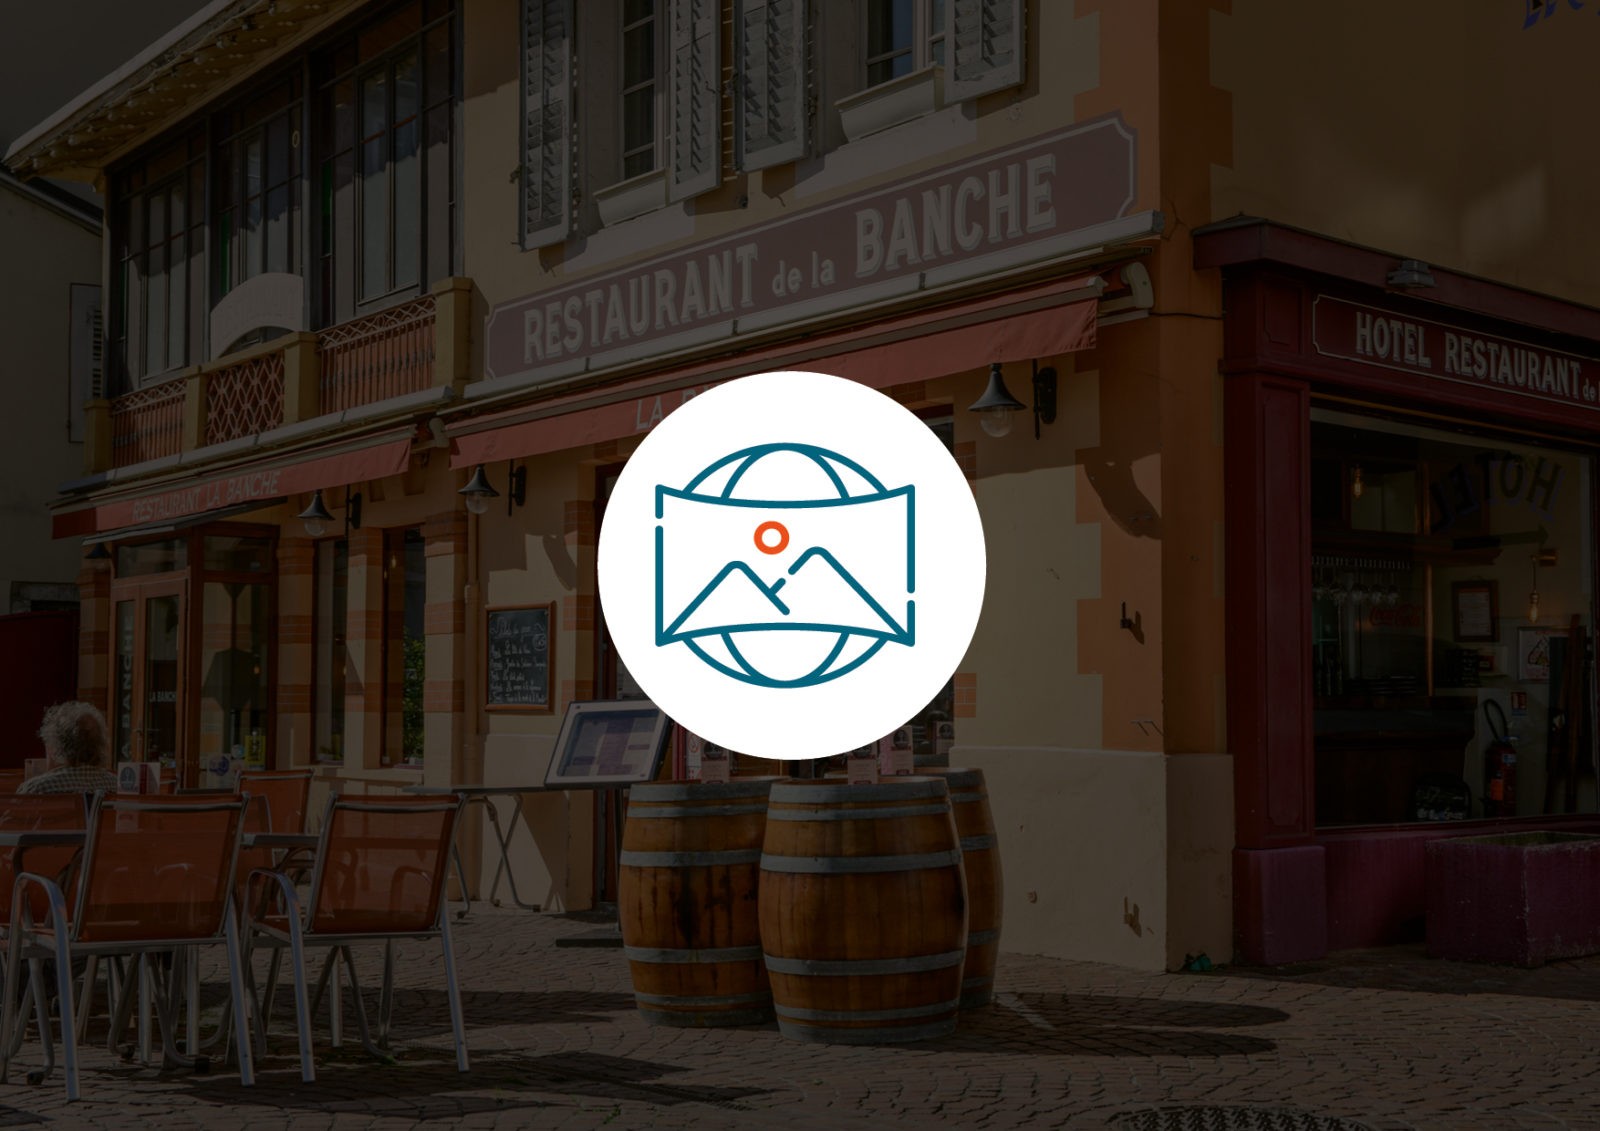 Visite virtuelle 360° Google Street view | Restaurant La Banche | Chambéry – Savoie